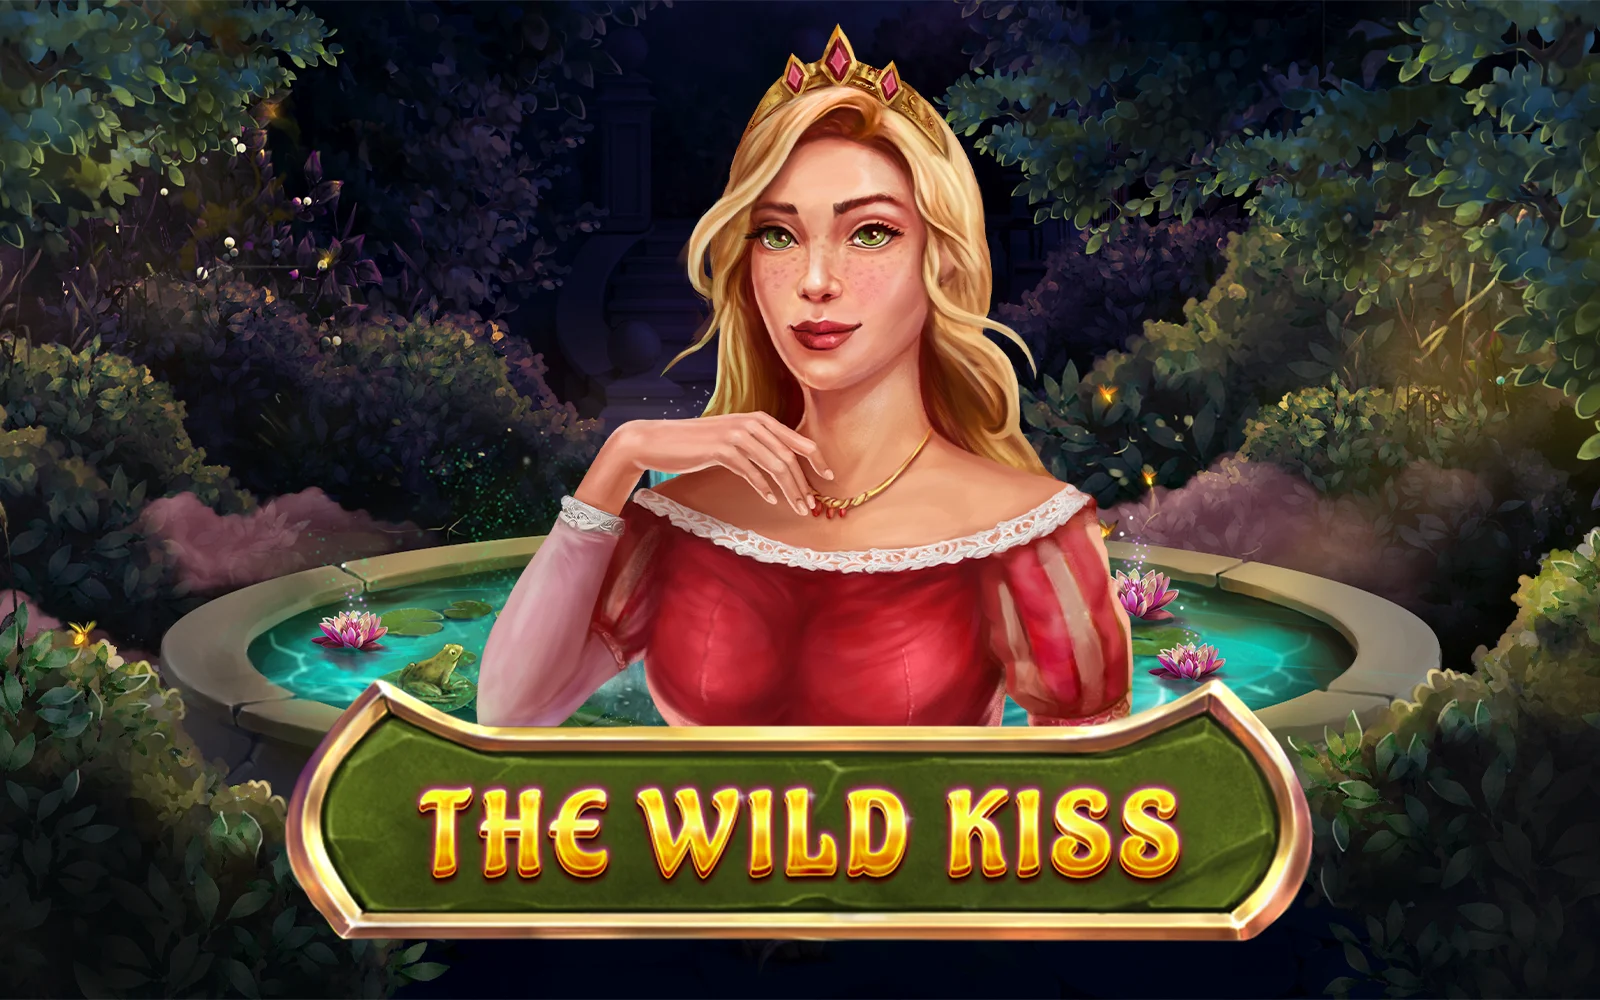 Gioca a The Wild Kiss sul casino online Starcasino.be